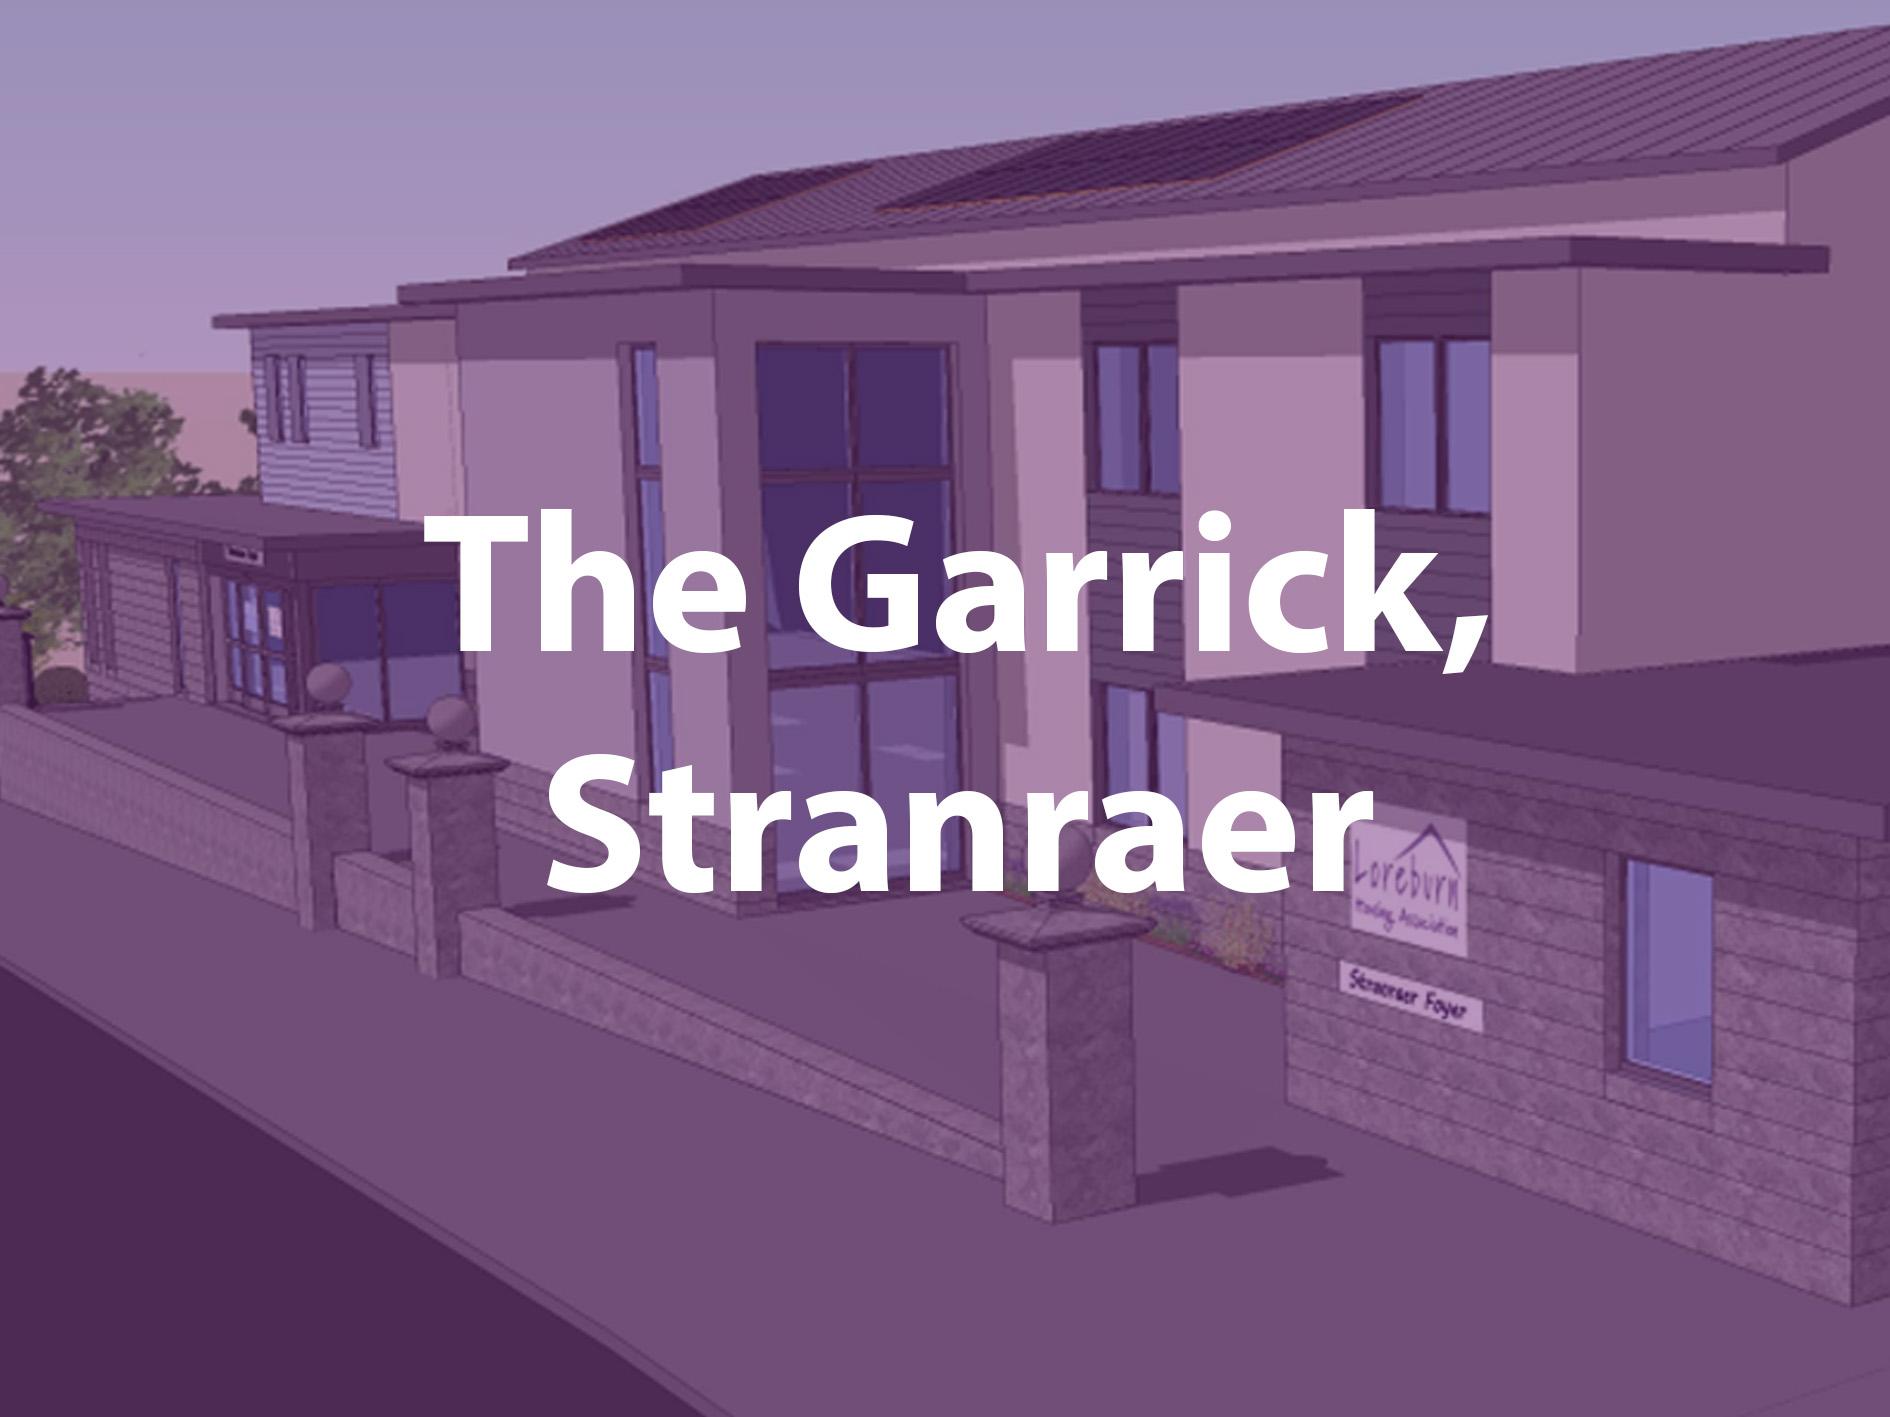 The Garrick Stranraer